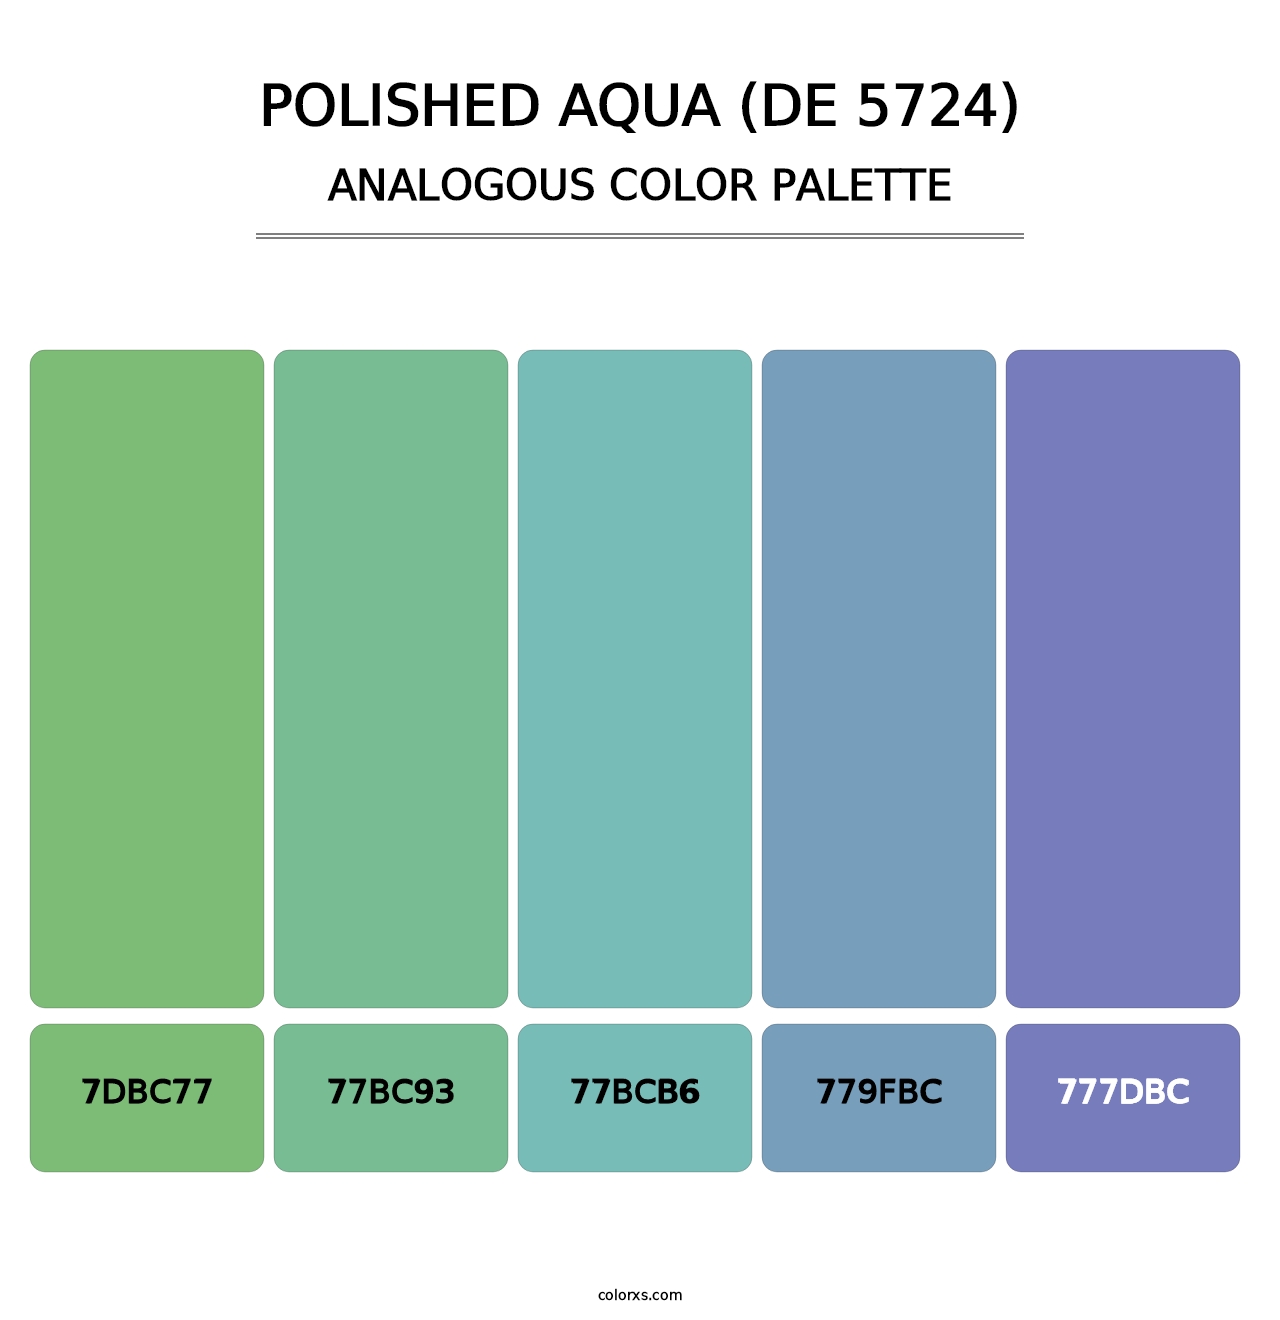 Polished Aqua (DE 5724) - Analogous Color Palette